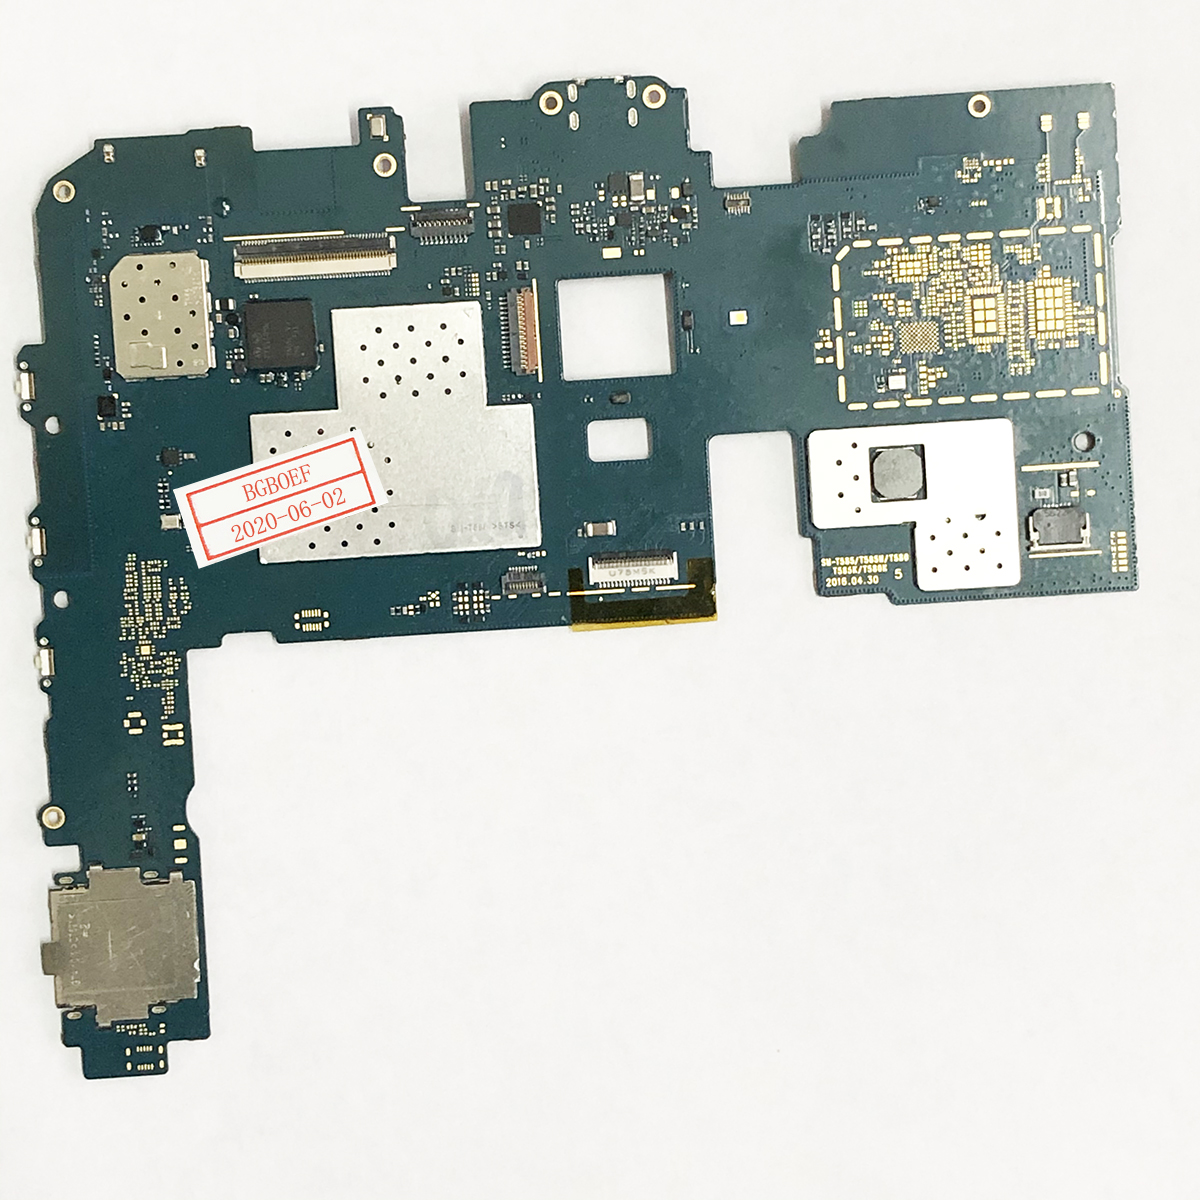 BGBOEF For Samsung Galaxy Tab A 10.1 2016 T580 motherboard unlocked mainboard original